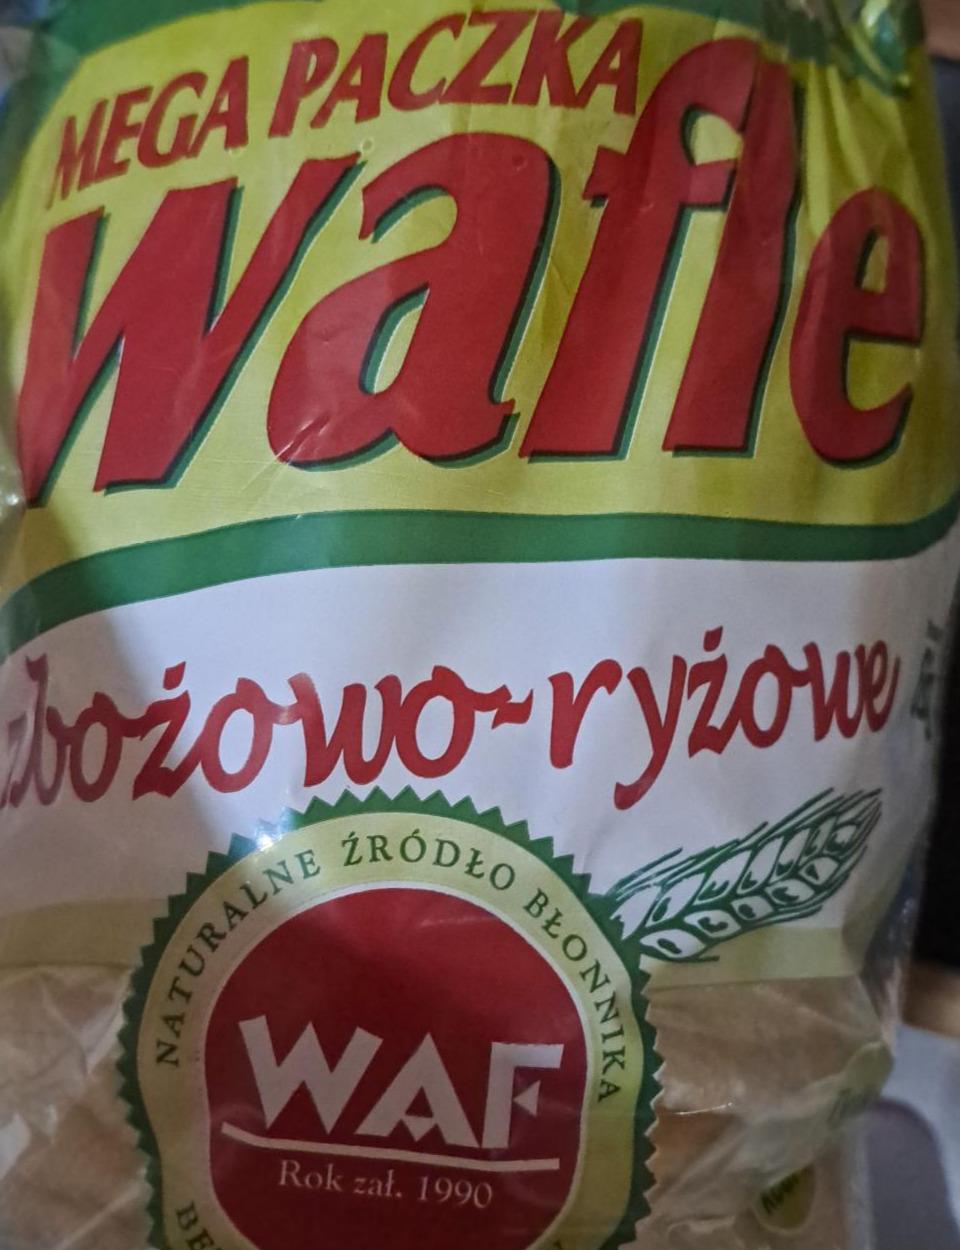 Zdjęcia - mega paczka wafle zbożowo ryżowe WAF